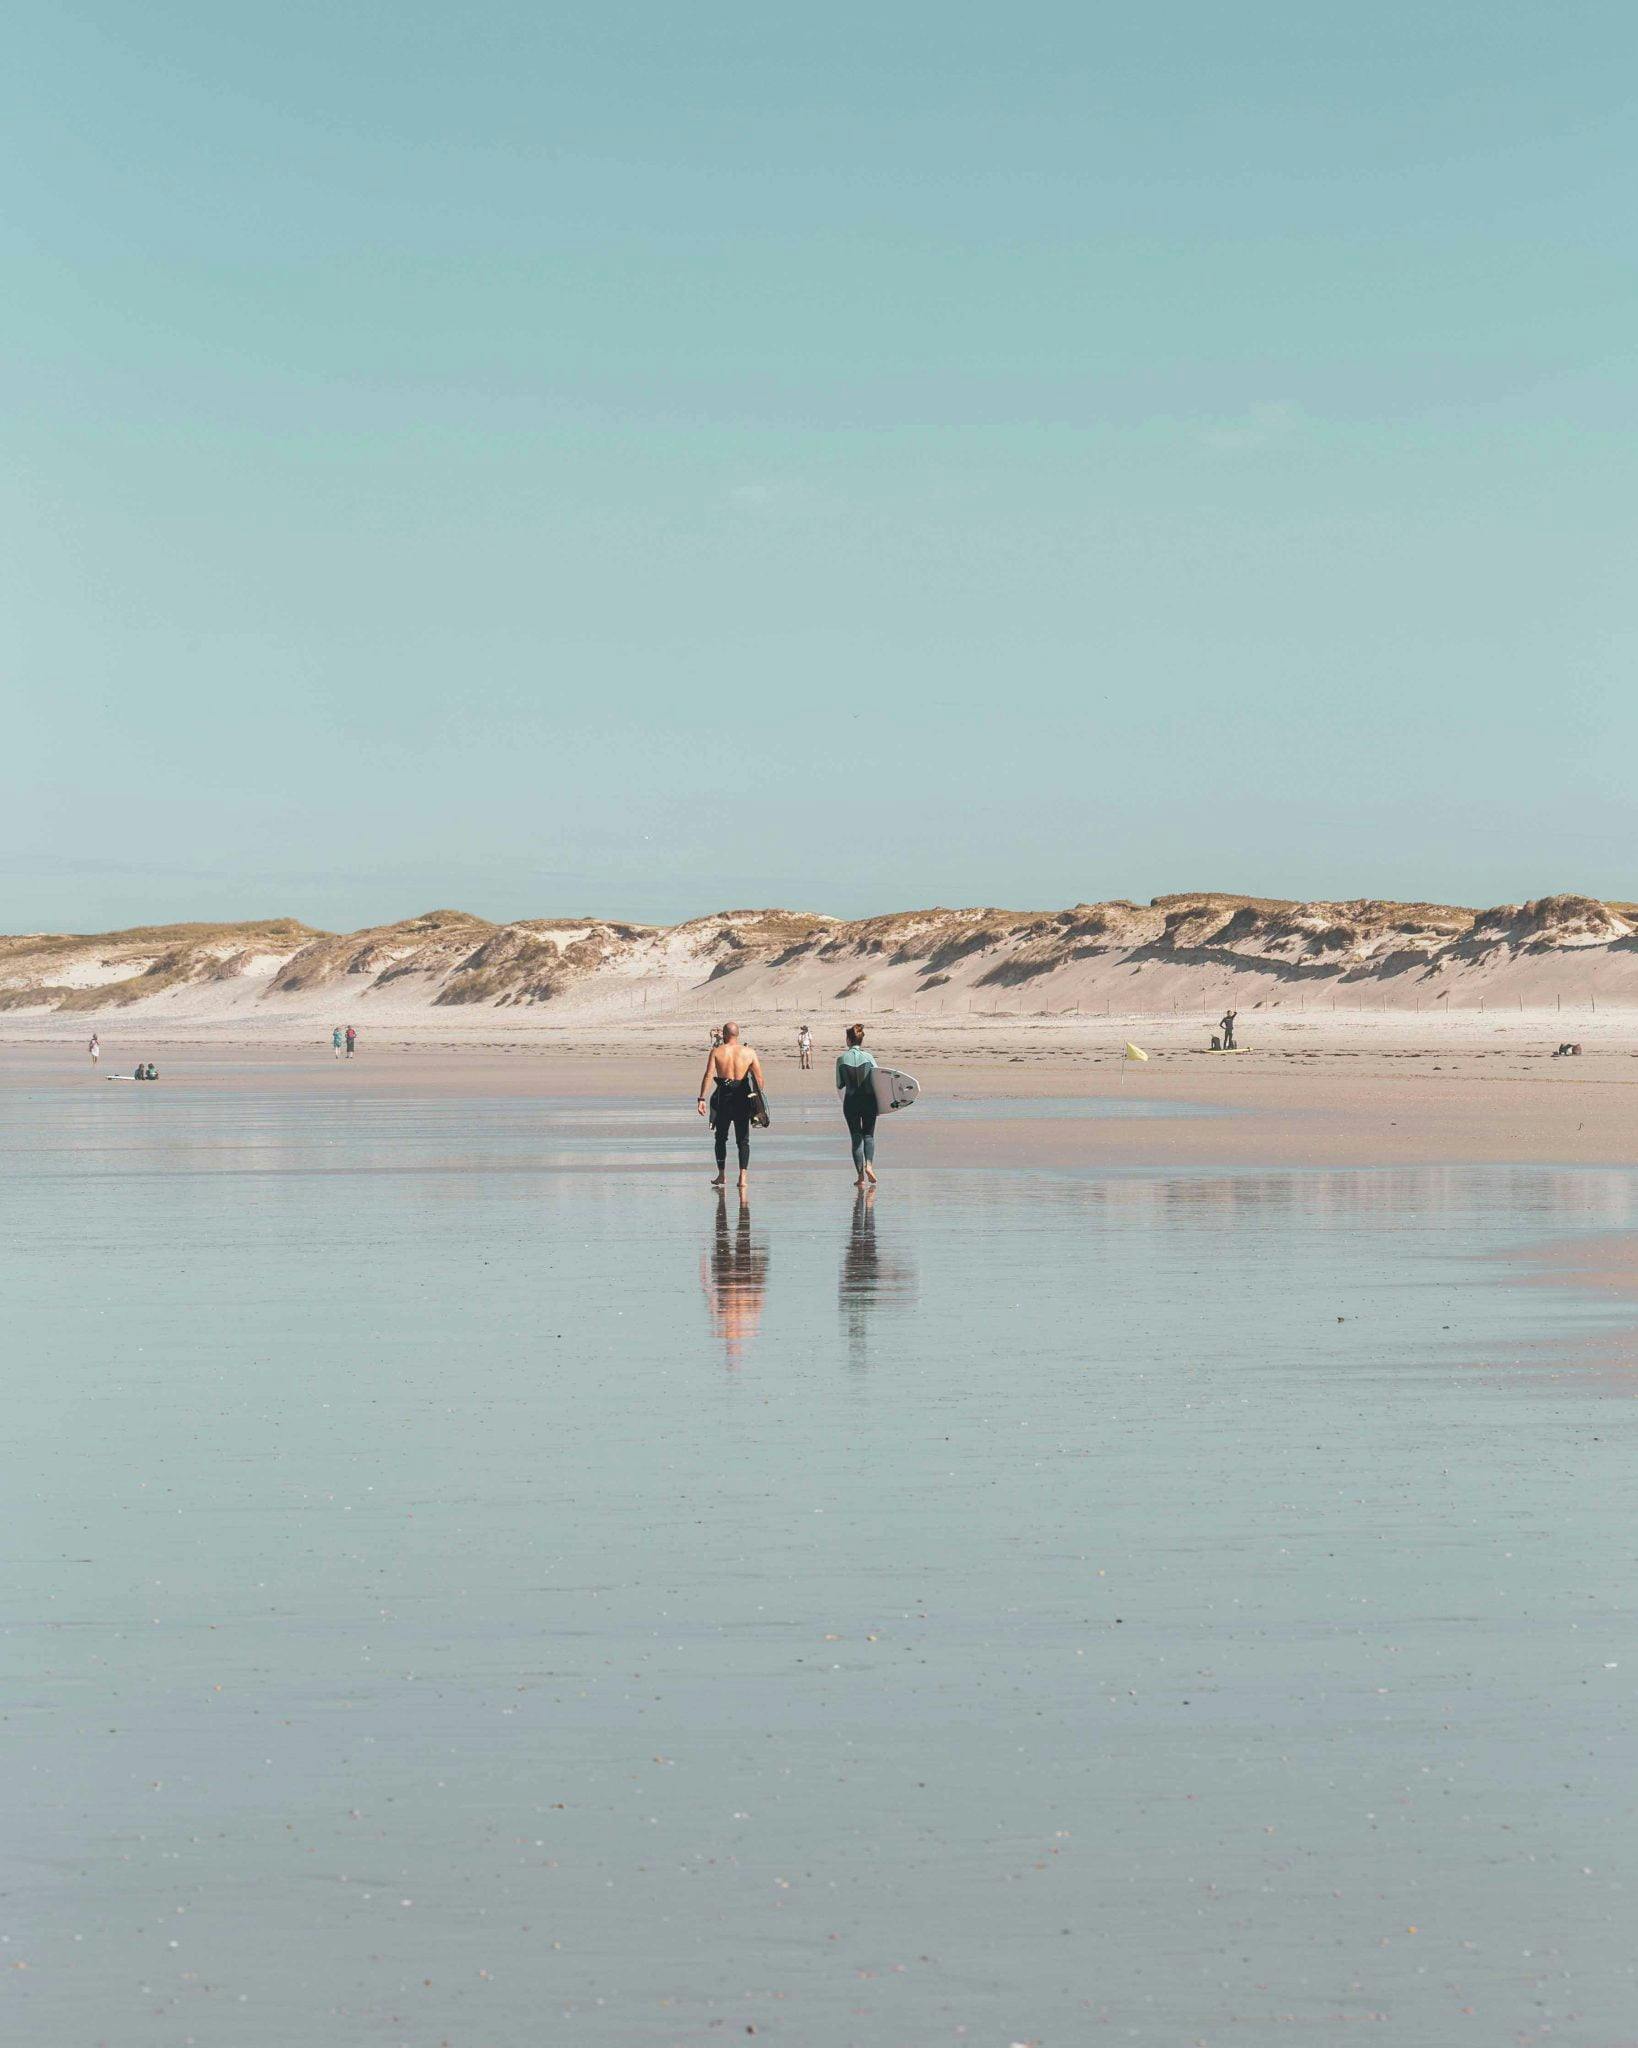 Deux surfeurs marchant sur la plage, dunes et ciel bleu en arrière plan